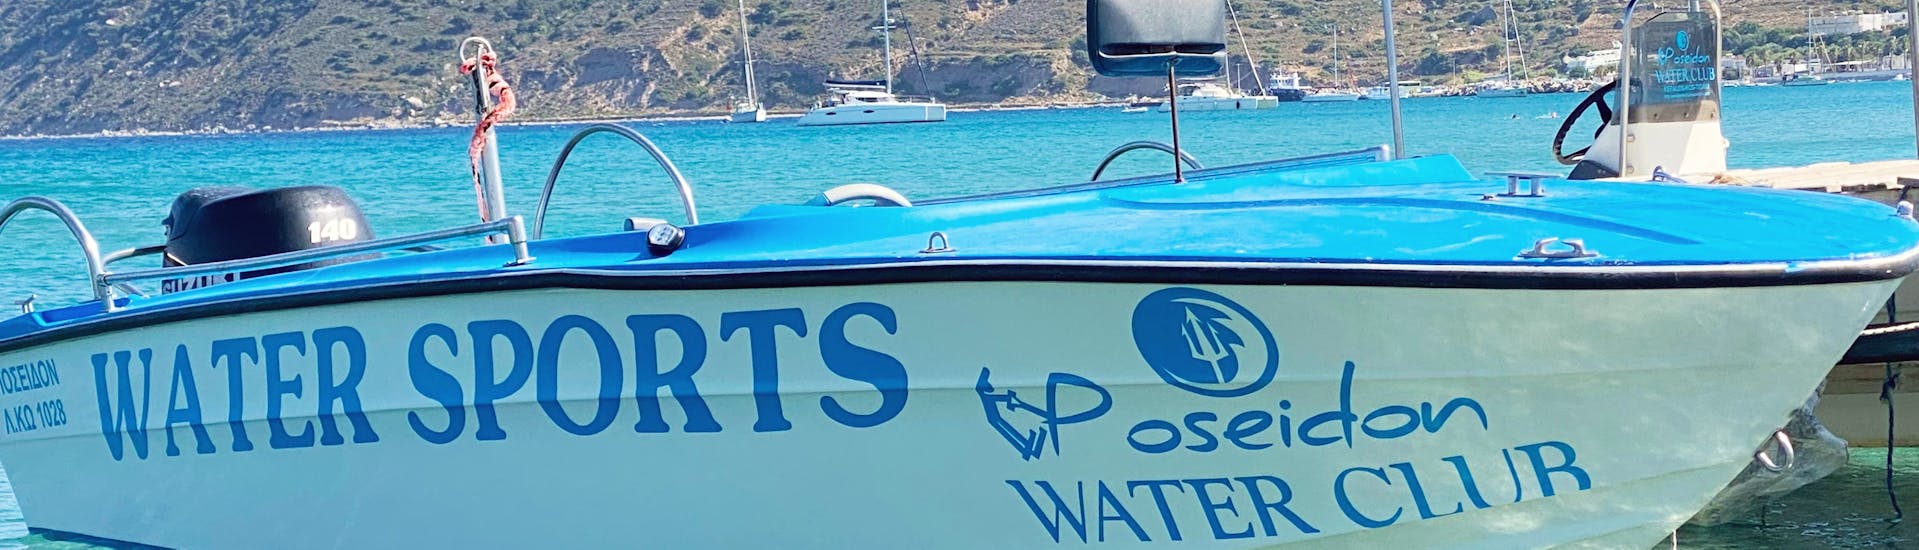 Vue sur le bateau lors de la location de bateau sur la plage de Kefalos à Kos  (jusqu'à 5 personnes) avec Water Club Poseidon Kos.